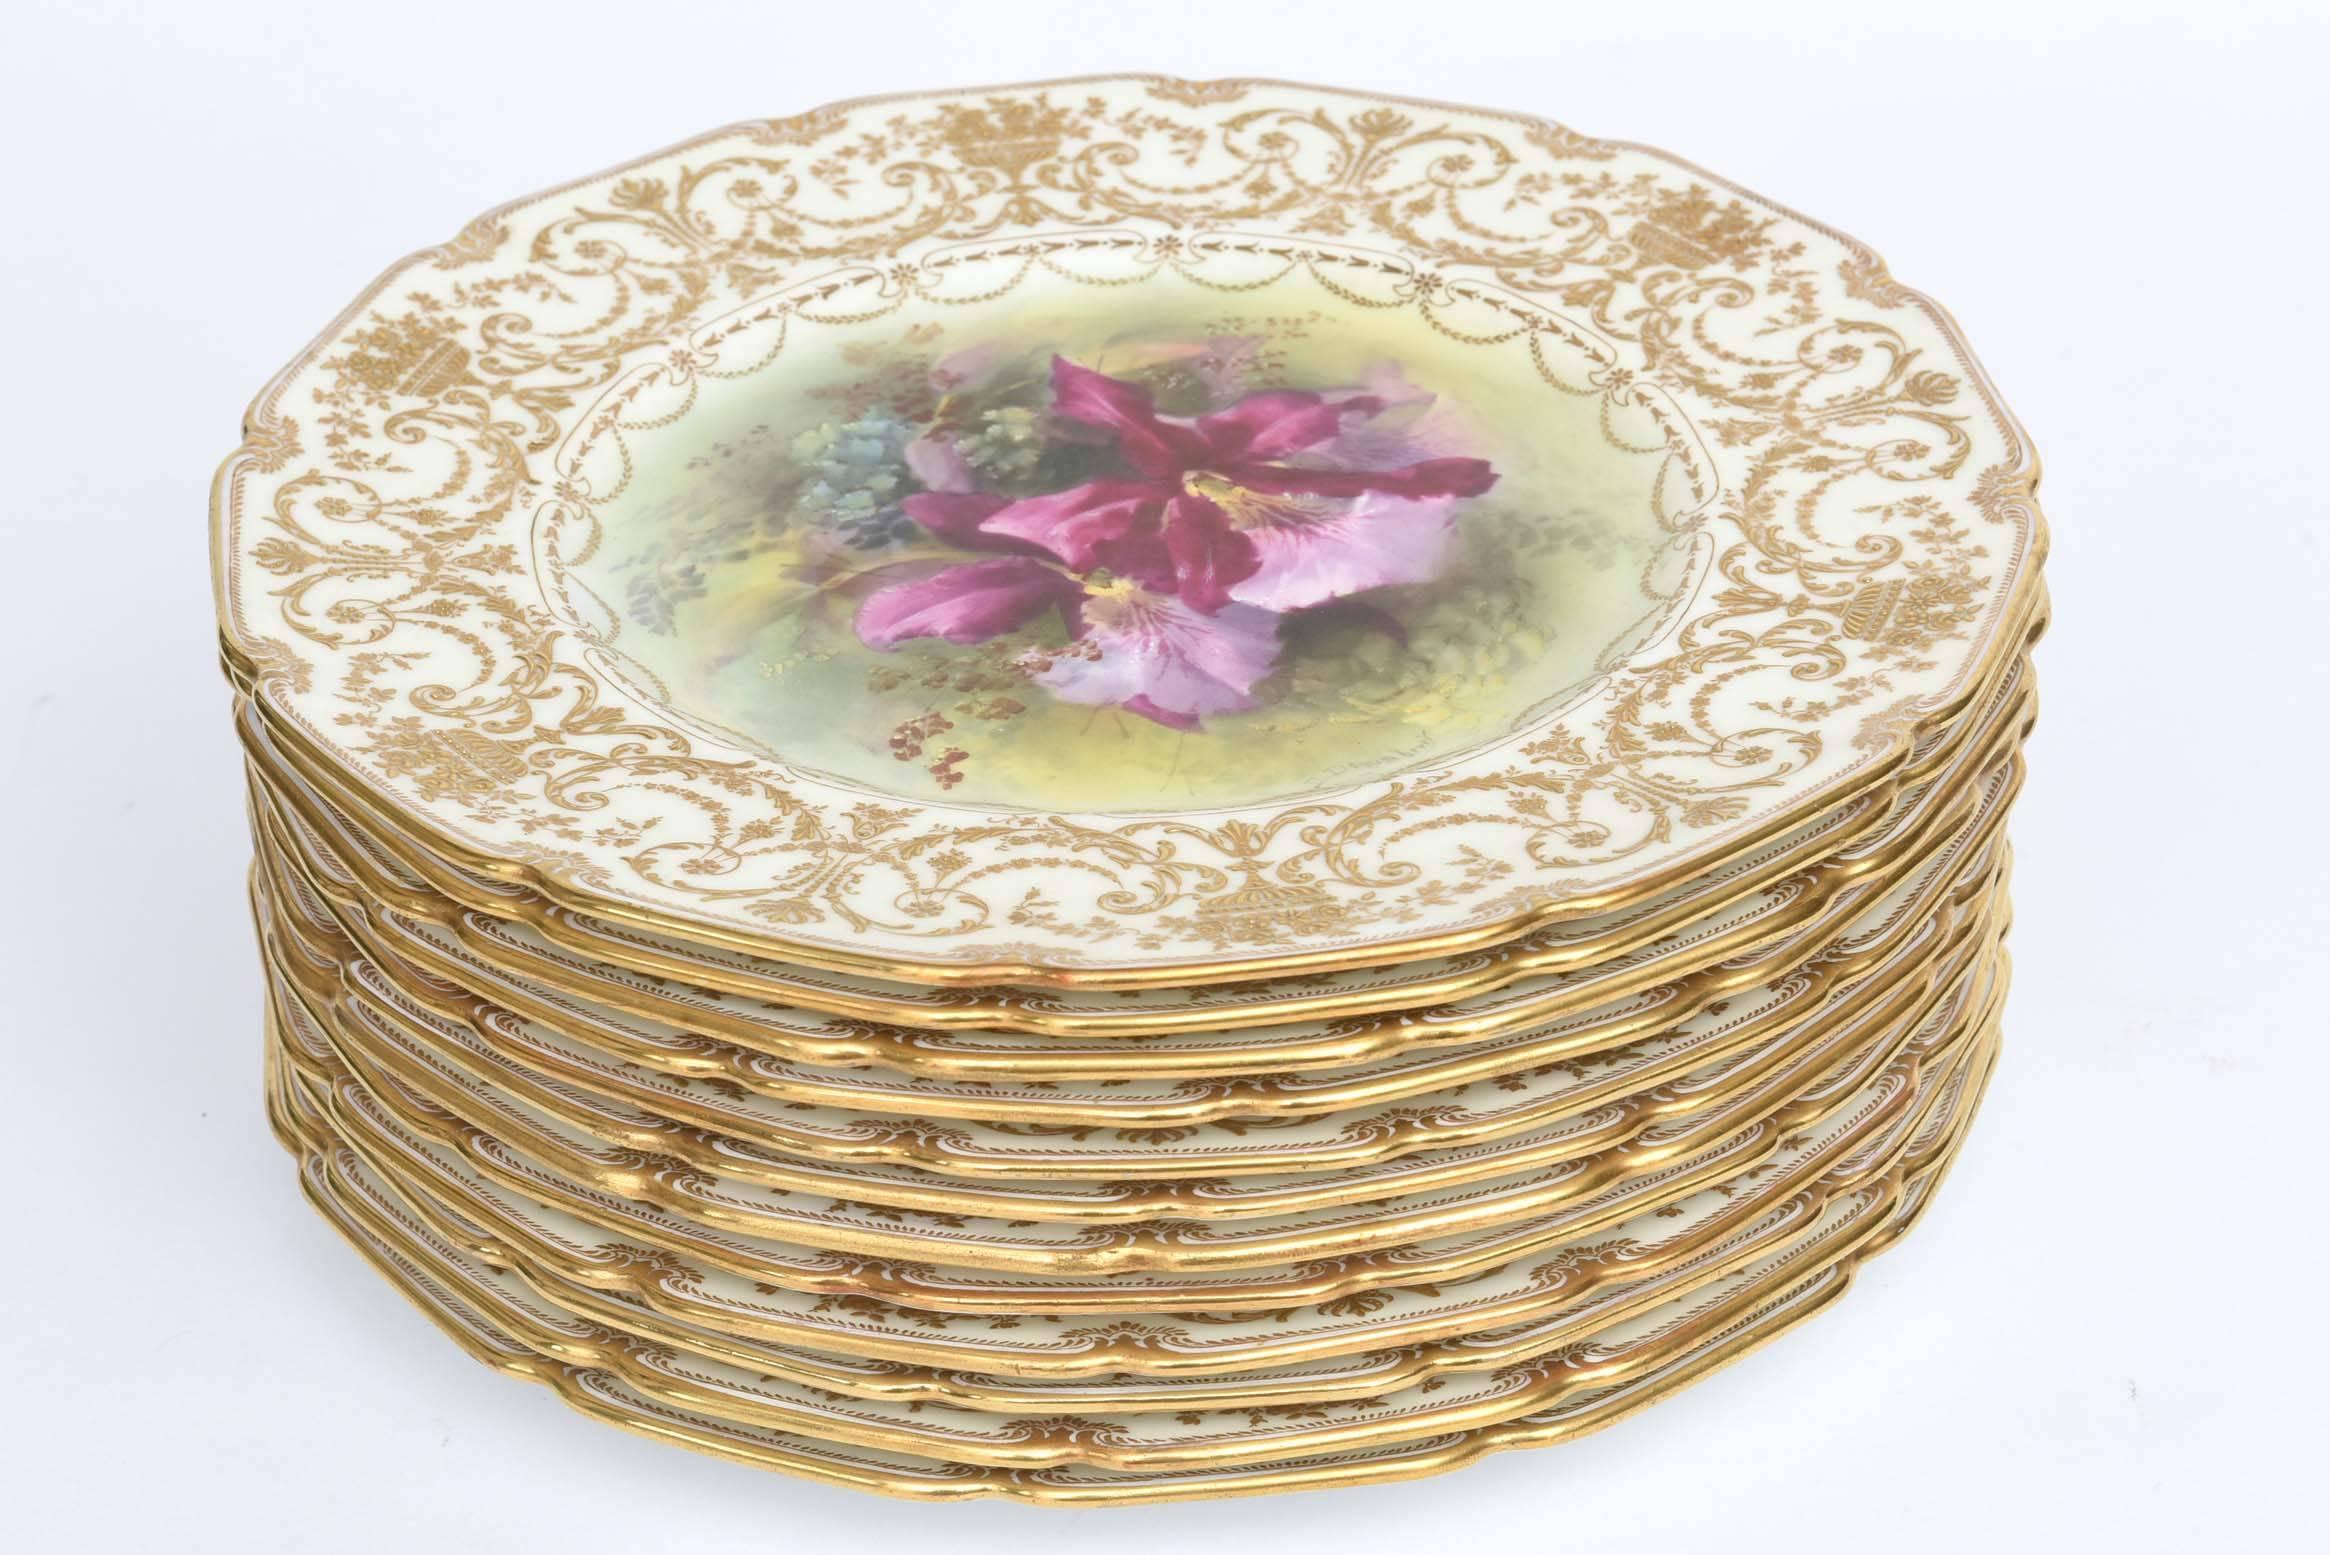 L'un des plus beaux ensembles d'assiettes anglaises anciennes de Royal Doulton. Elles sont dotées d'un bord de forme classique, d'une dorure en relief sur les épaules et sont peintes à la main de manière exquise par le détaillant de l'époque dorée